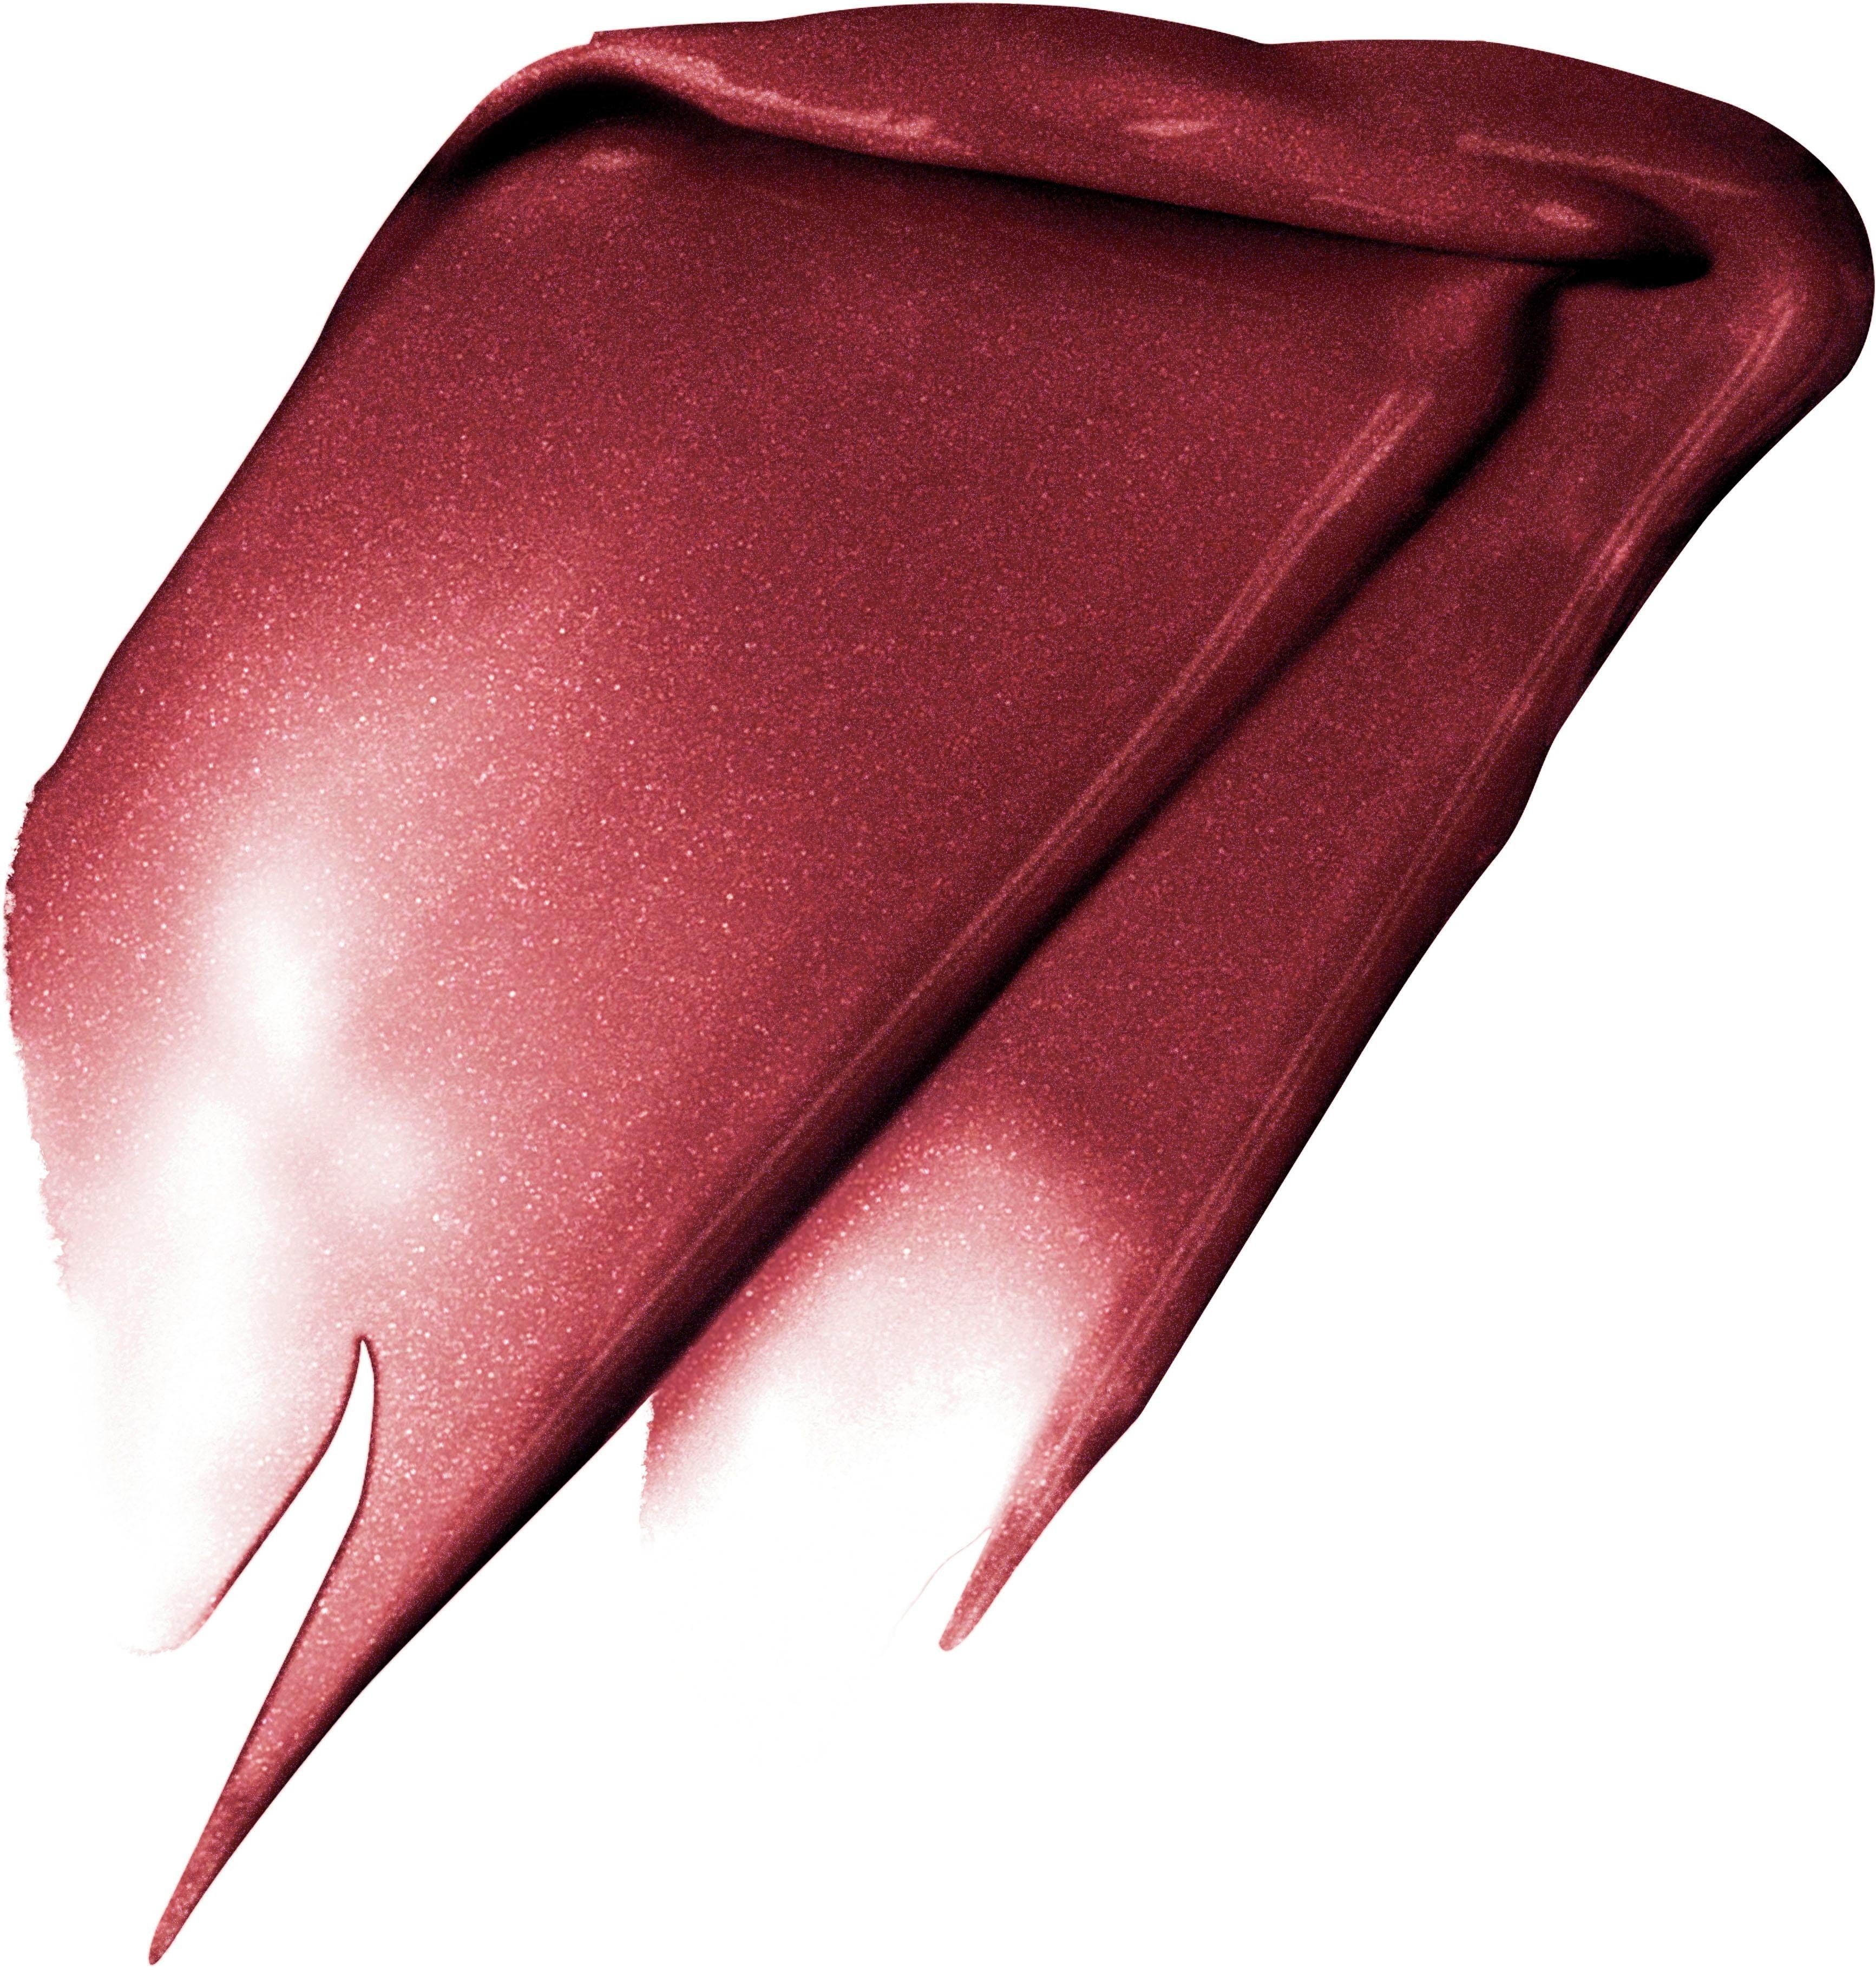 L'ORÉAL PROFESSIONNEL PARIS L'ORÉAL PARIS 205 Fascinate Metallic Lippenstift Rouge I Signature